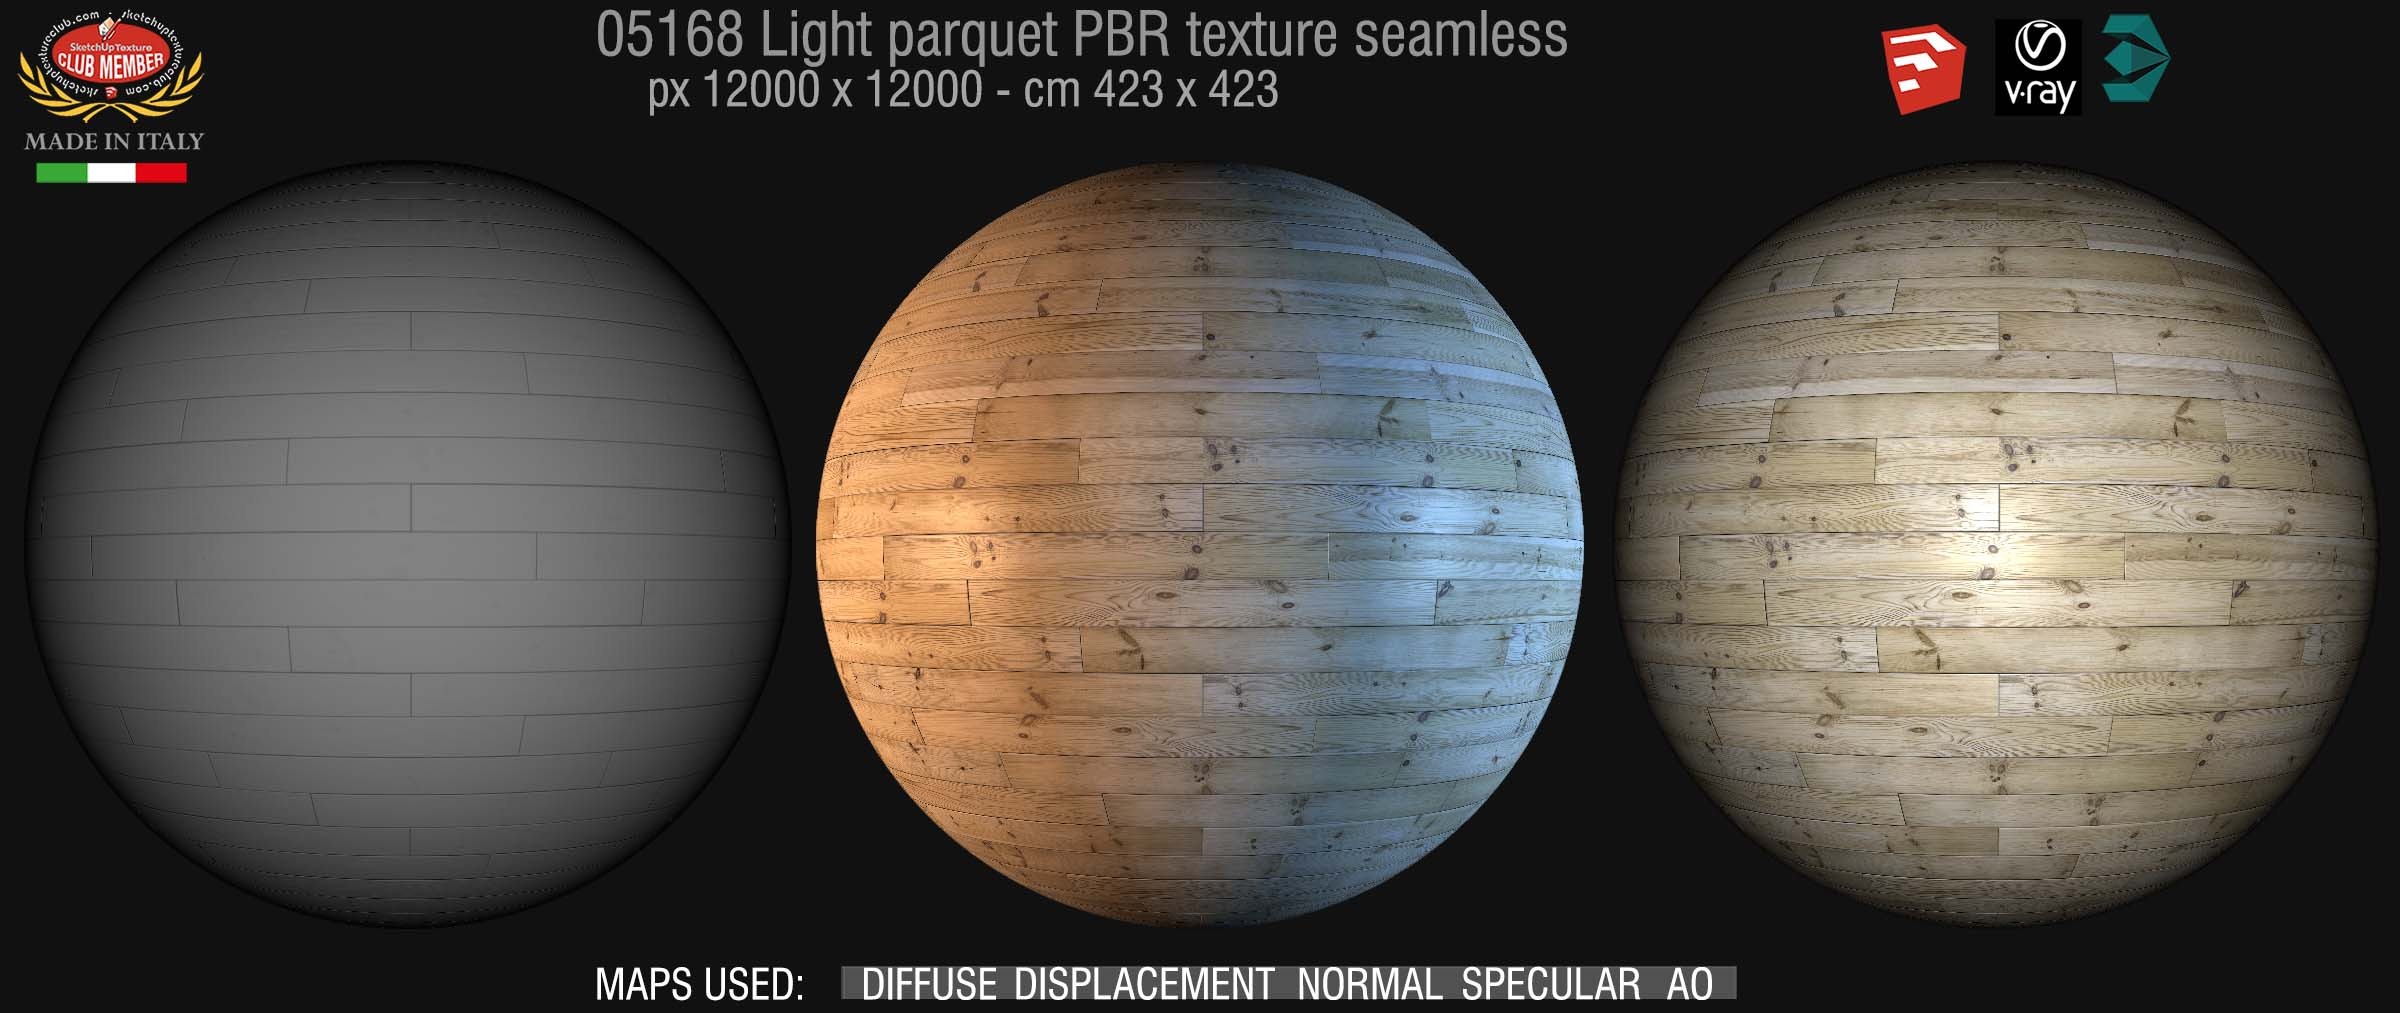 05168 light parquet PBR texture seamless DEMO